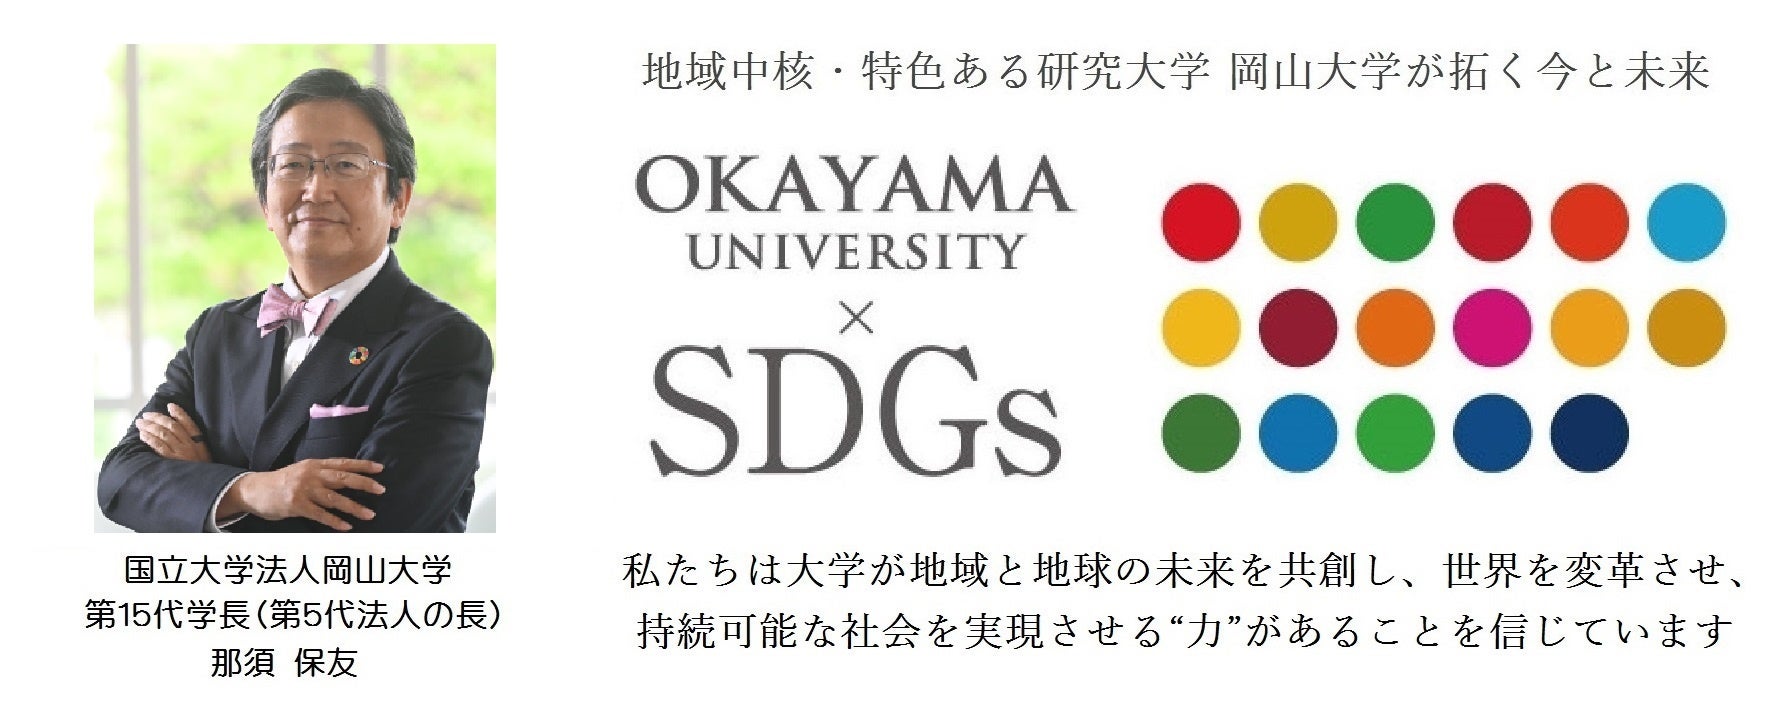 【岡山大学】岡山大学SDGs推進表彰2023を受賞したDS部が「おかやま夢育イニシアチブ」の取り組みを発表